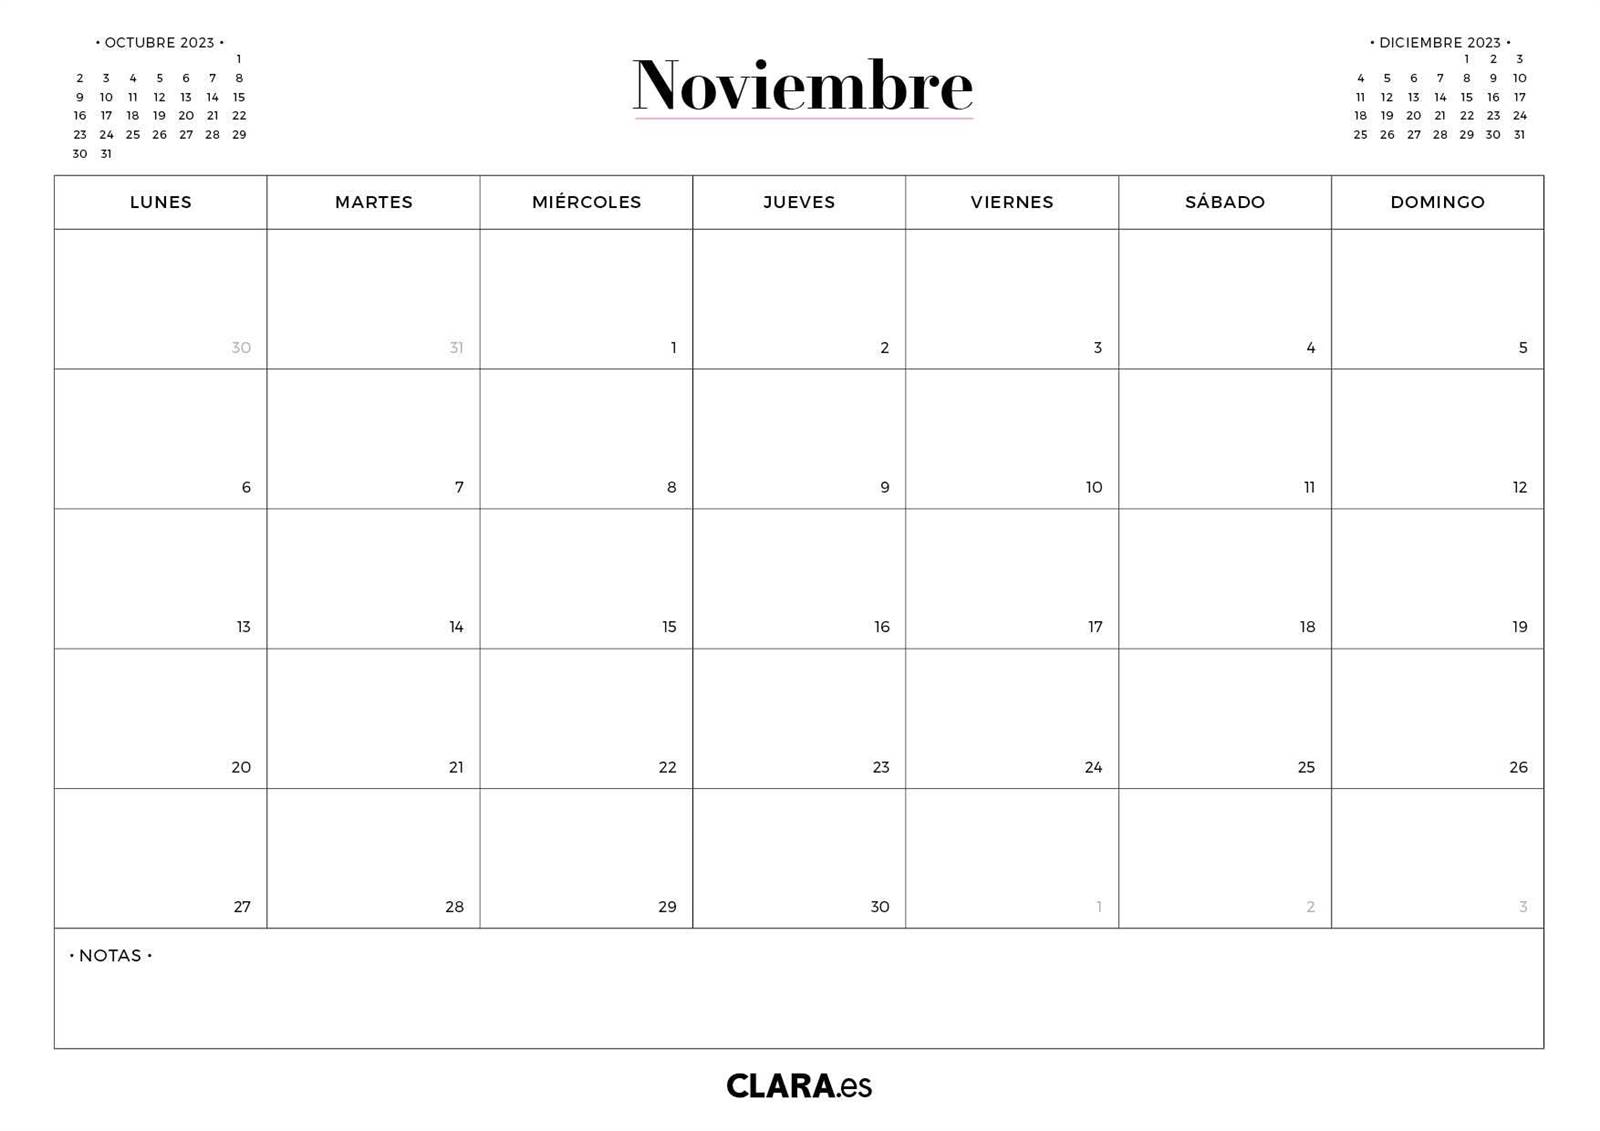 Calendario de noviembre 2023.